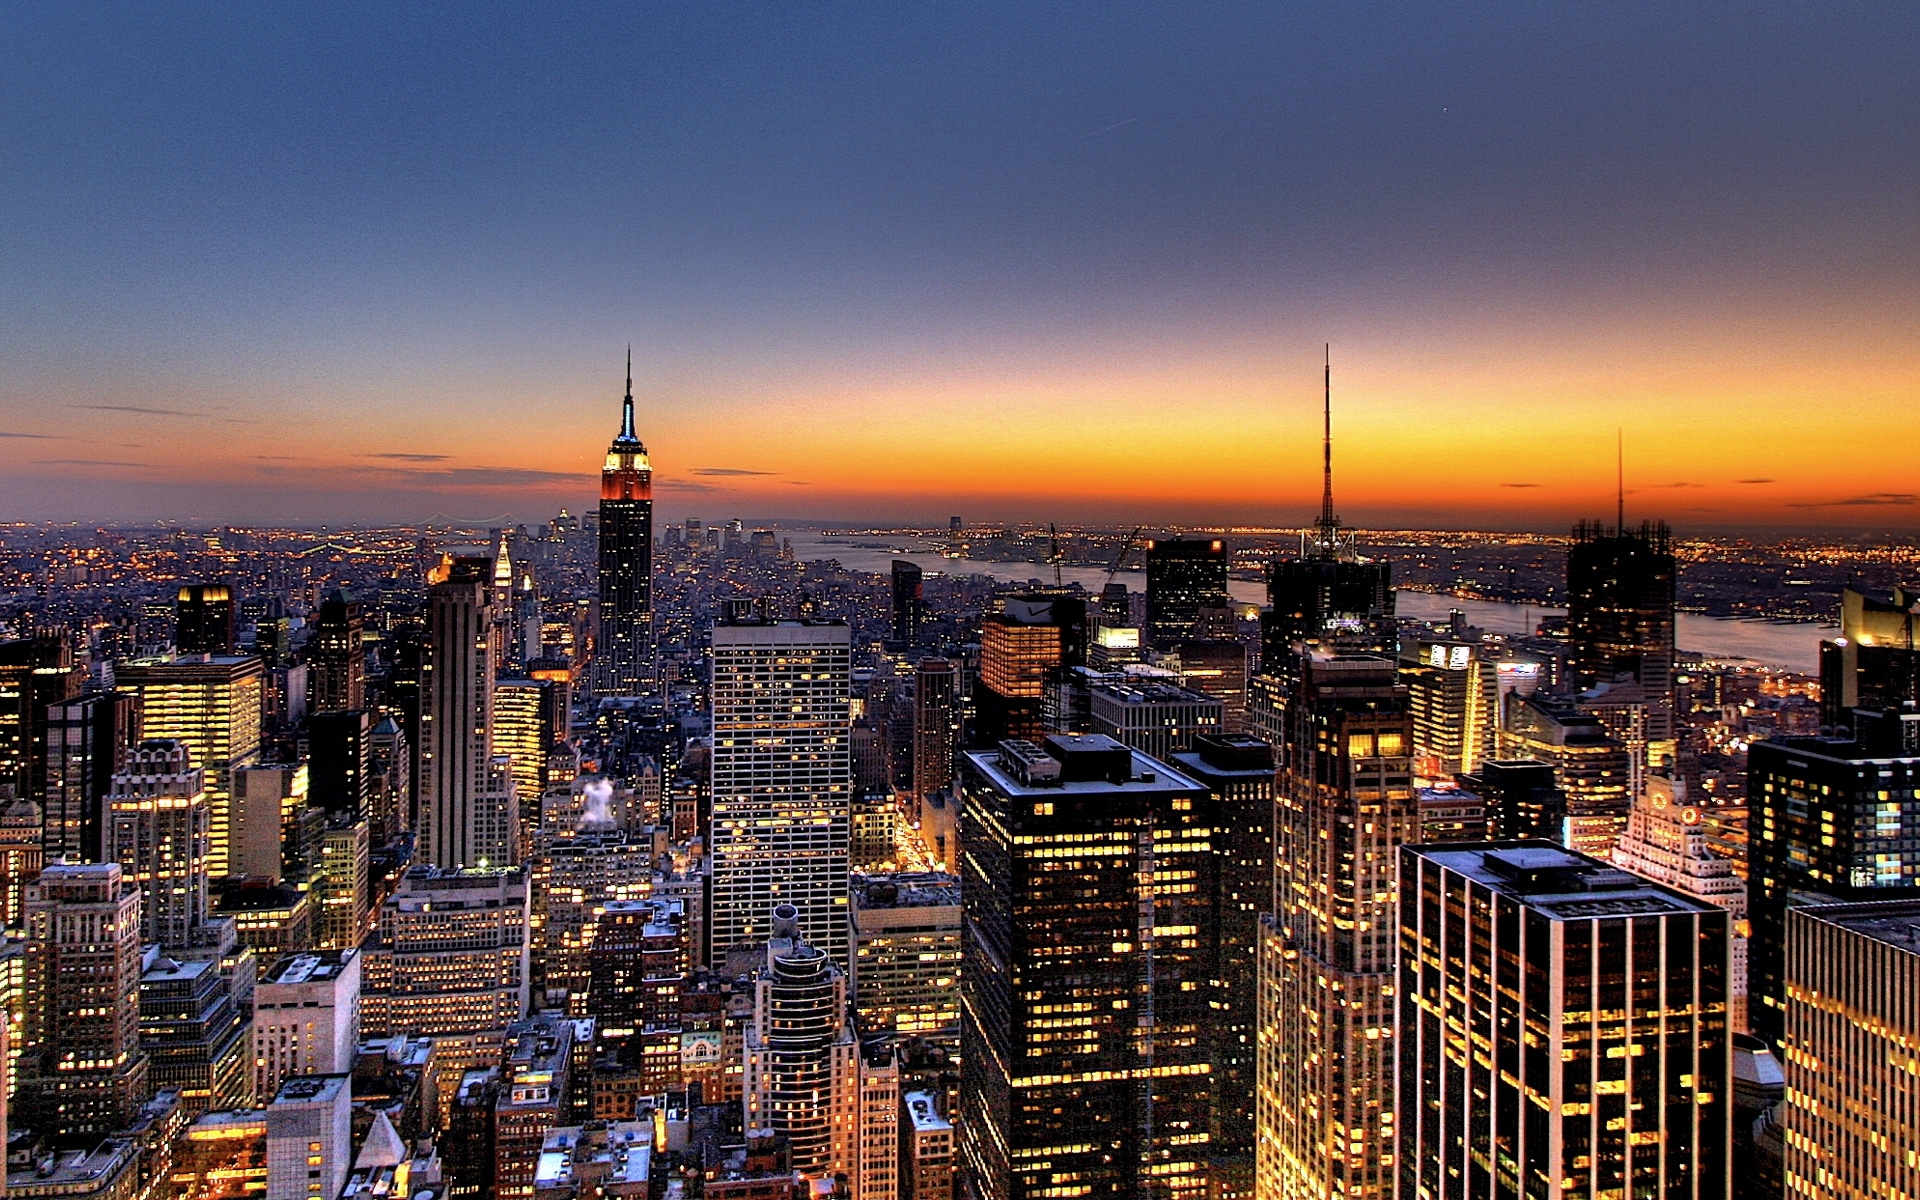 10 New New York City Skyline Wallpaper Hd FULL HD 1080p For PC Desktop